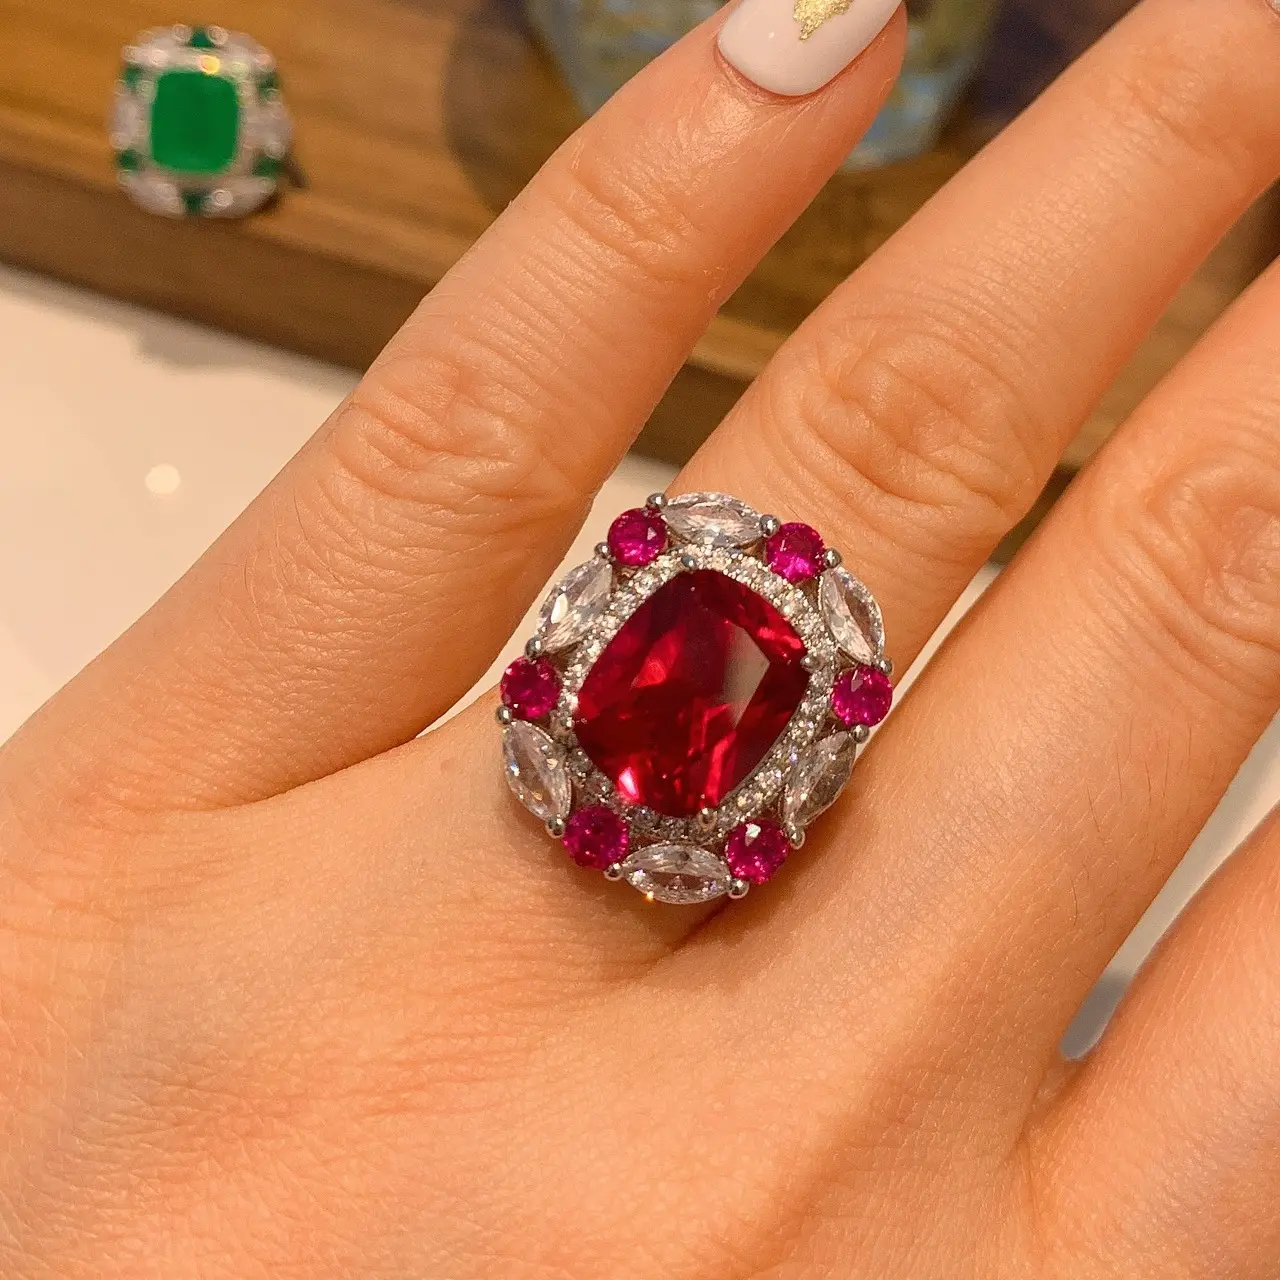 Großhandel Hot Selling Modeschmuck Ringe Verstellbarer Kupfer ring Bunter Naturstein ring für Frauen